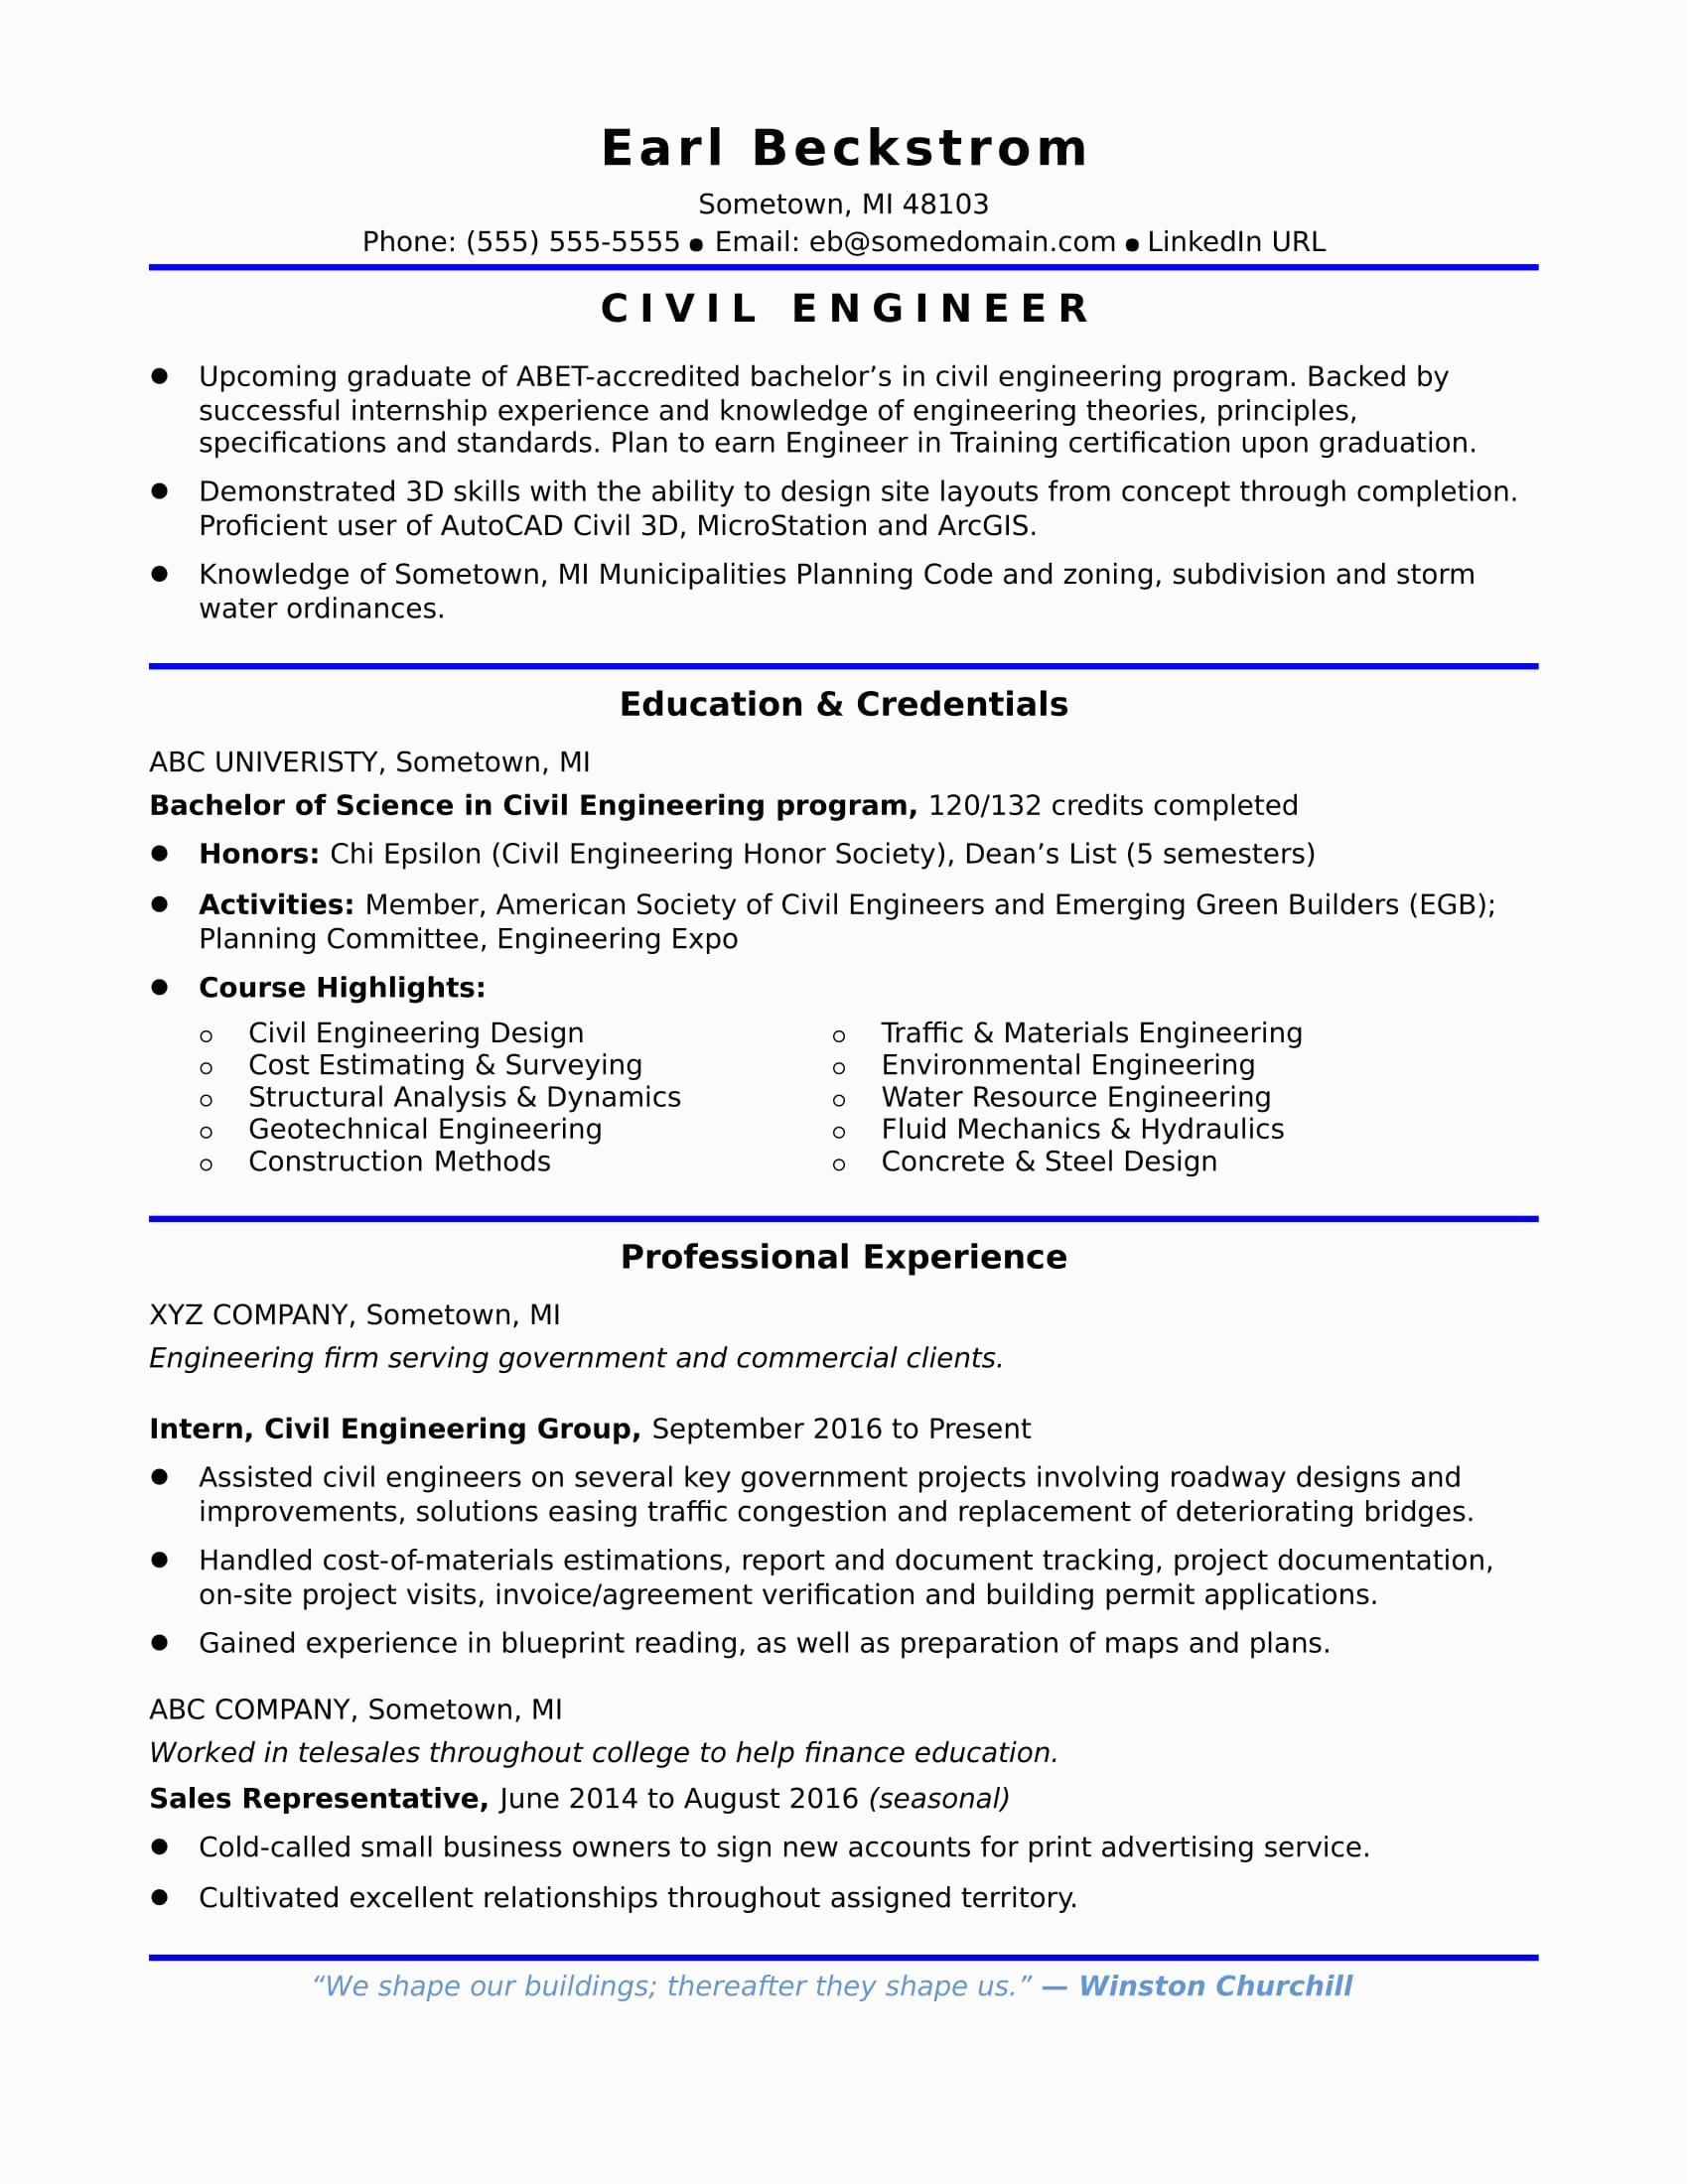 Sample Resume for Retired Civil Engineer Sample Resume for An Entry Level Civil Engineer